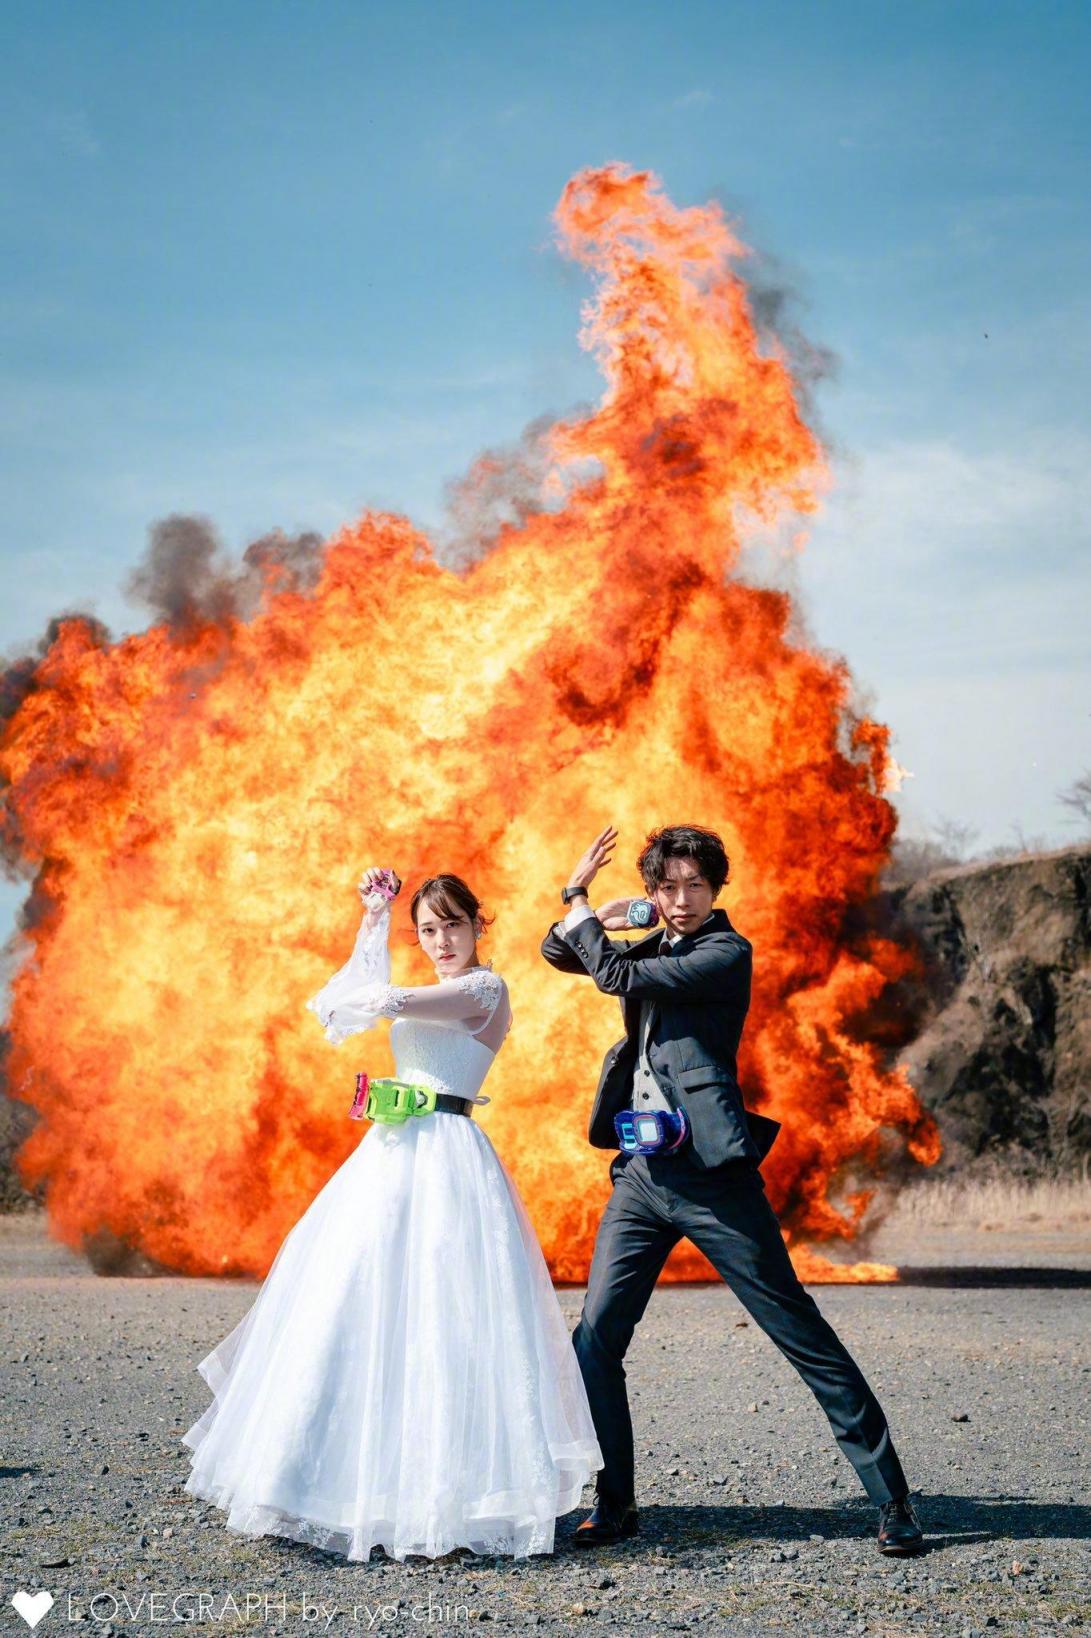 日本一家摄影公司推出 “爆炸婚纱照” 业务  第1张